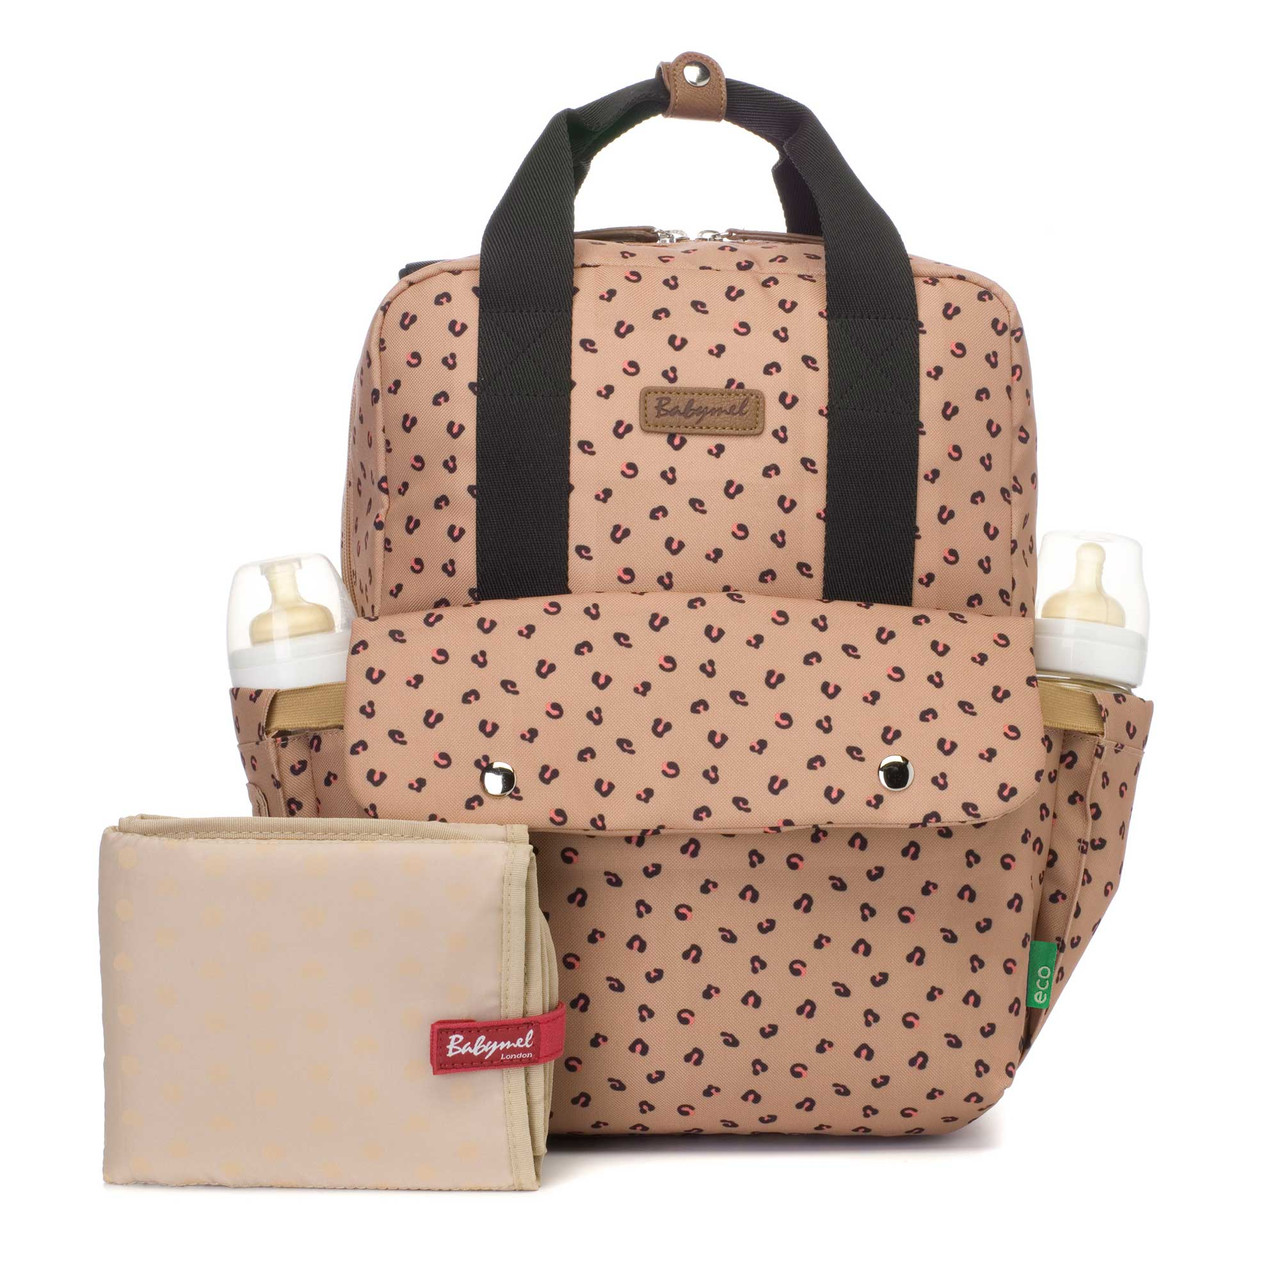 Buy 5PCS Diaper Bag Tote Set - Baby Bags for Mom Online at desertcartINDIA